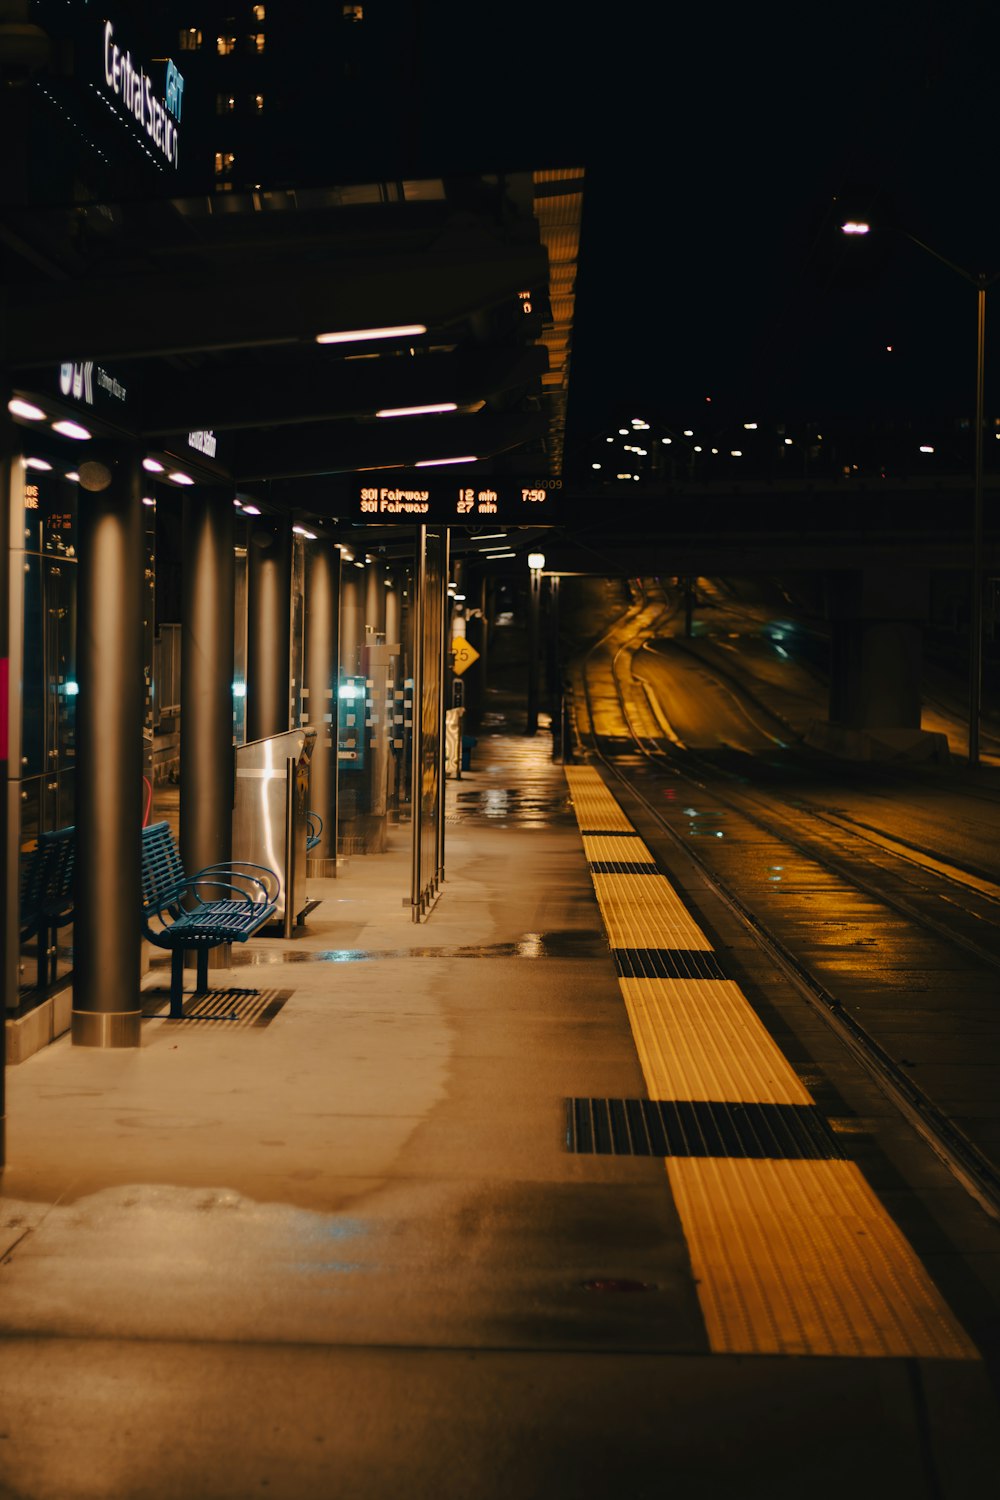 una panchina seduta sul lato di una stazione ferroviaria